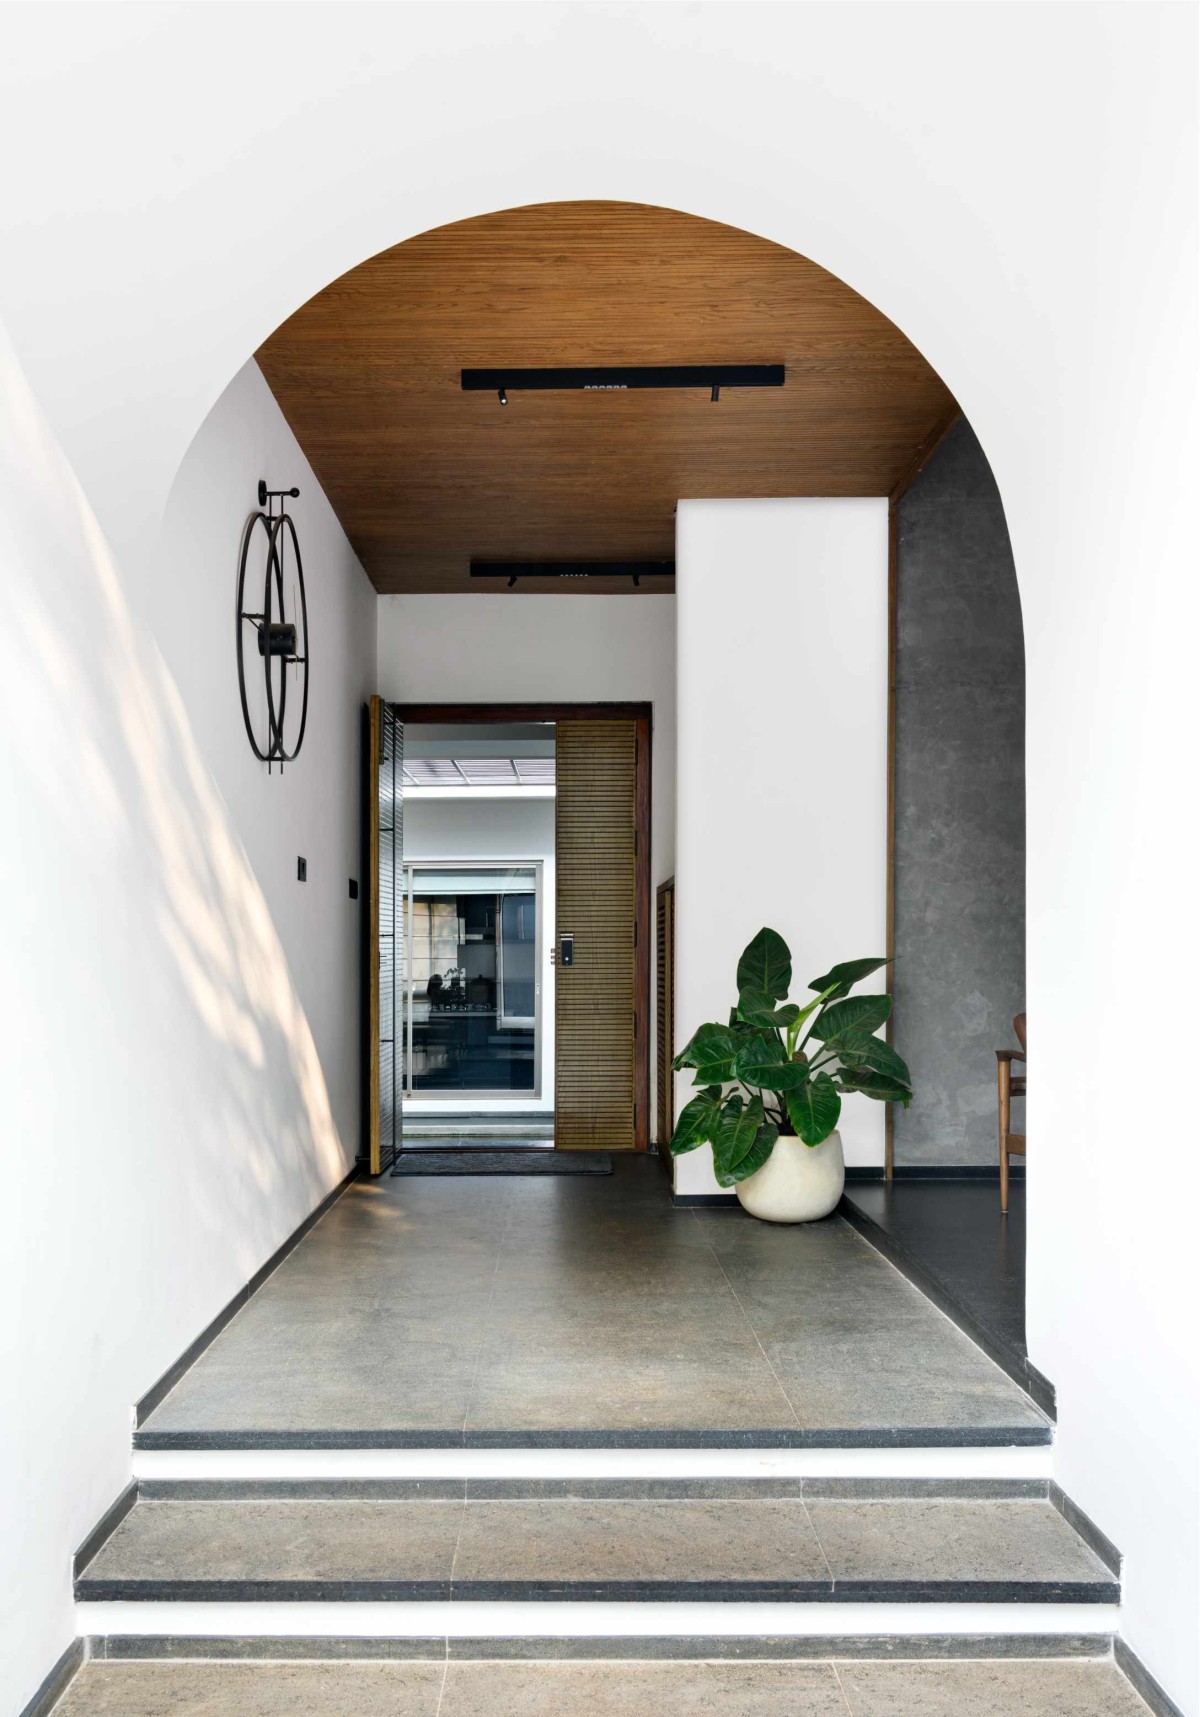 Entrance lobby of The Hidden House by Aslam Sham Architects